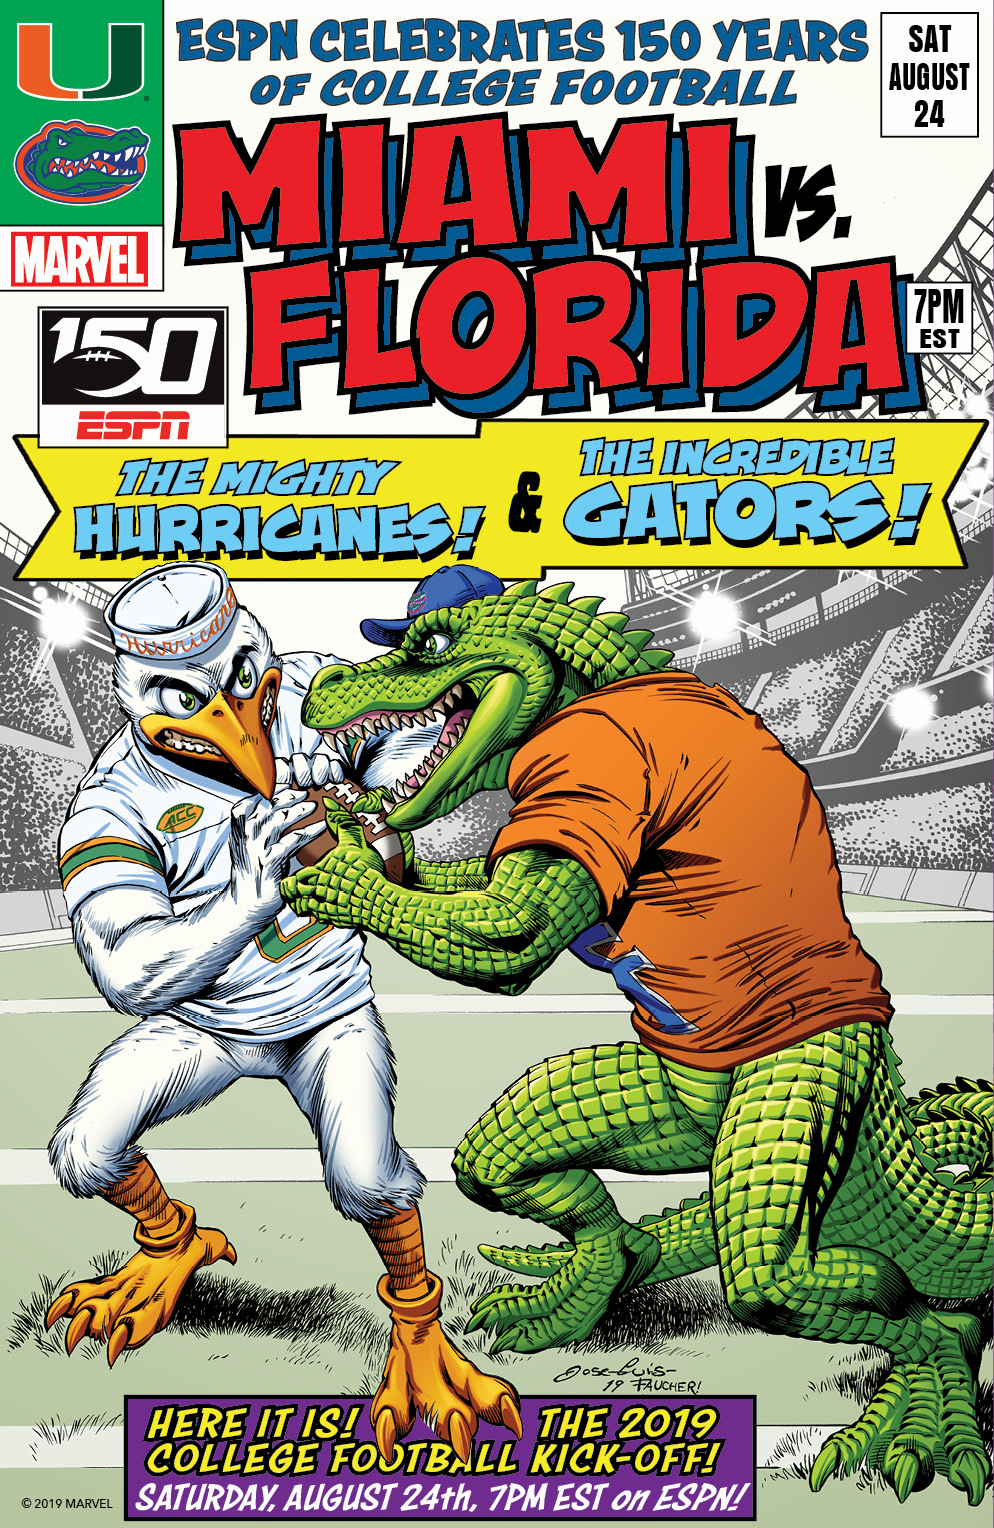 College Football 150 commemorative cover - Miami vs Florida 2019